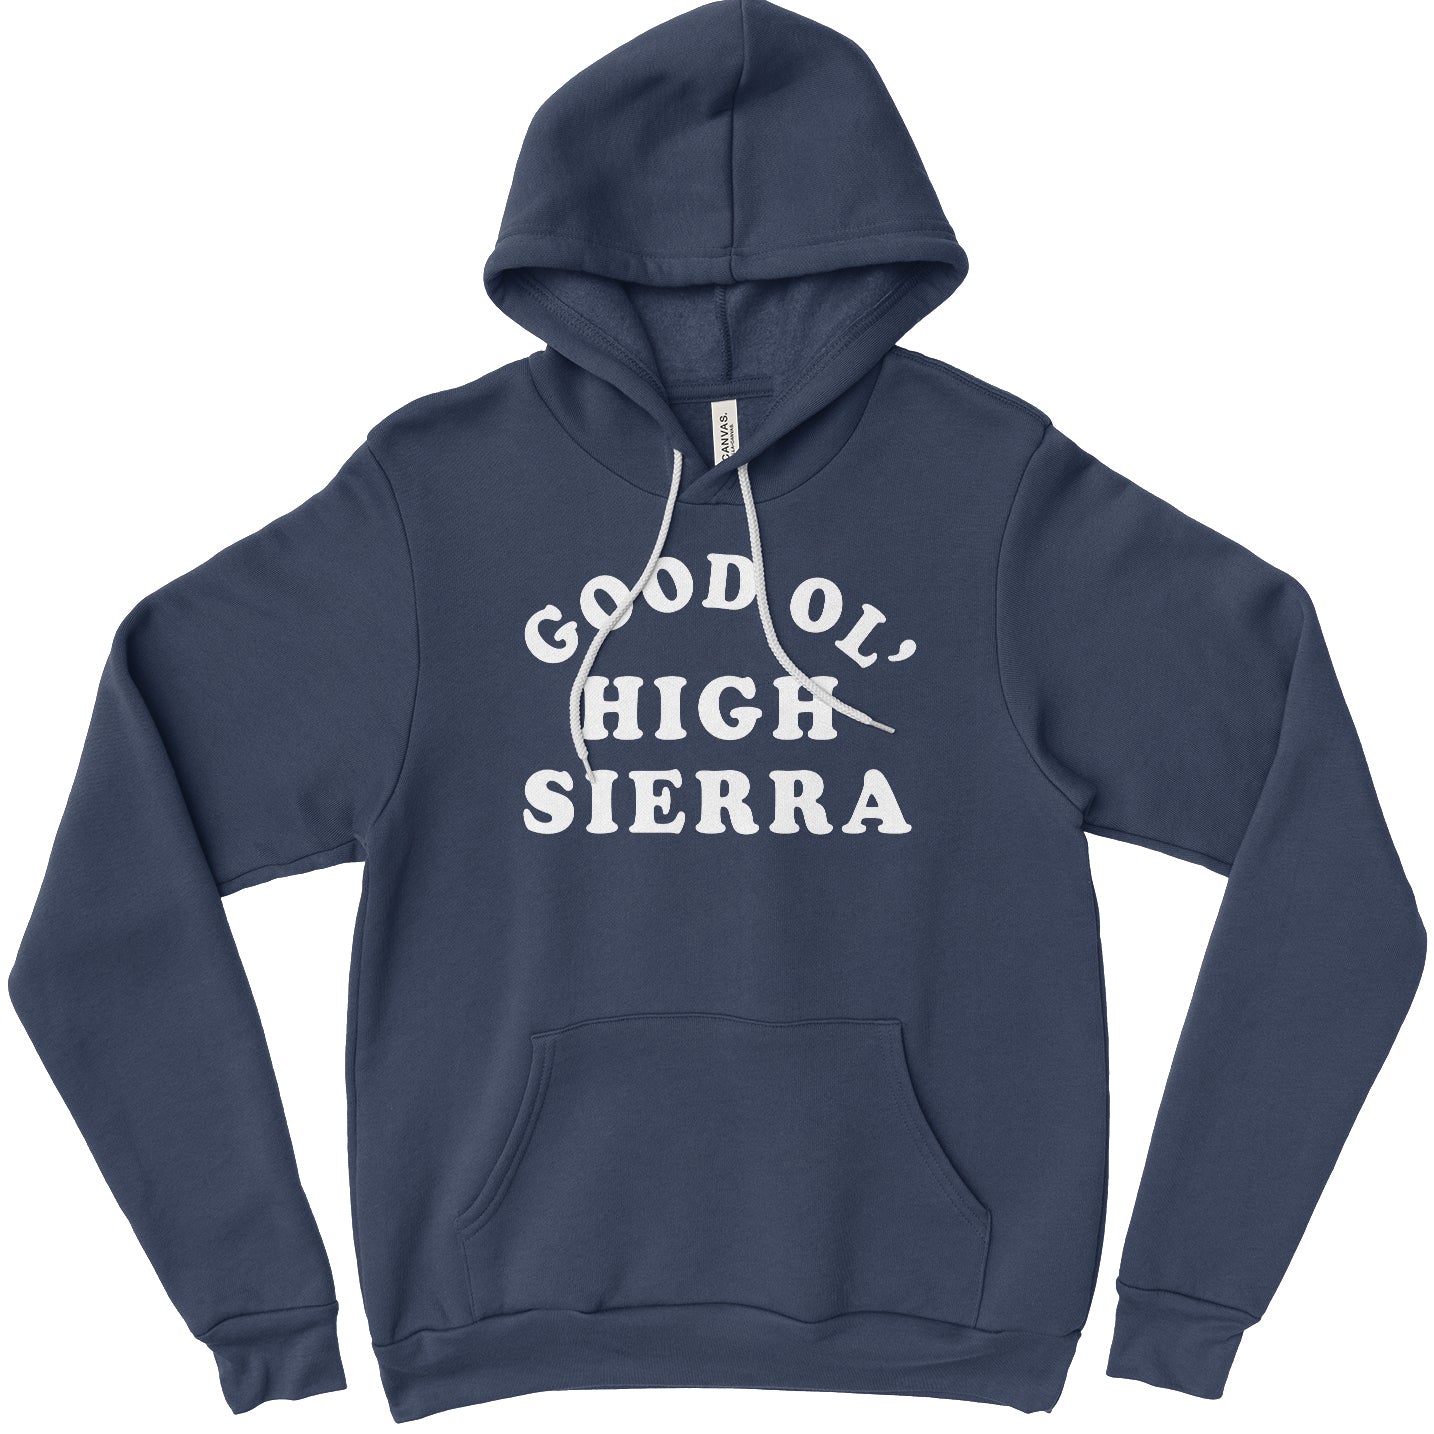 Good Ol' High Sierra Unisex Hoodie